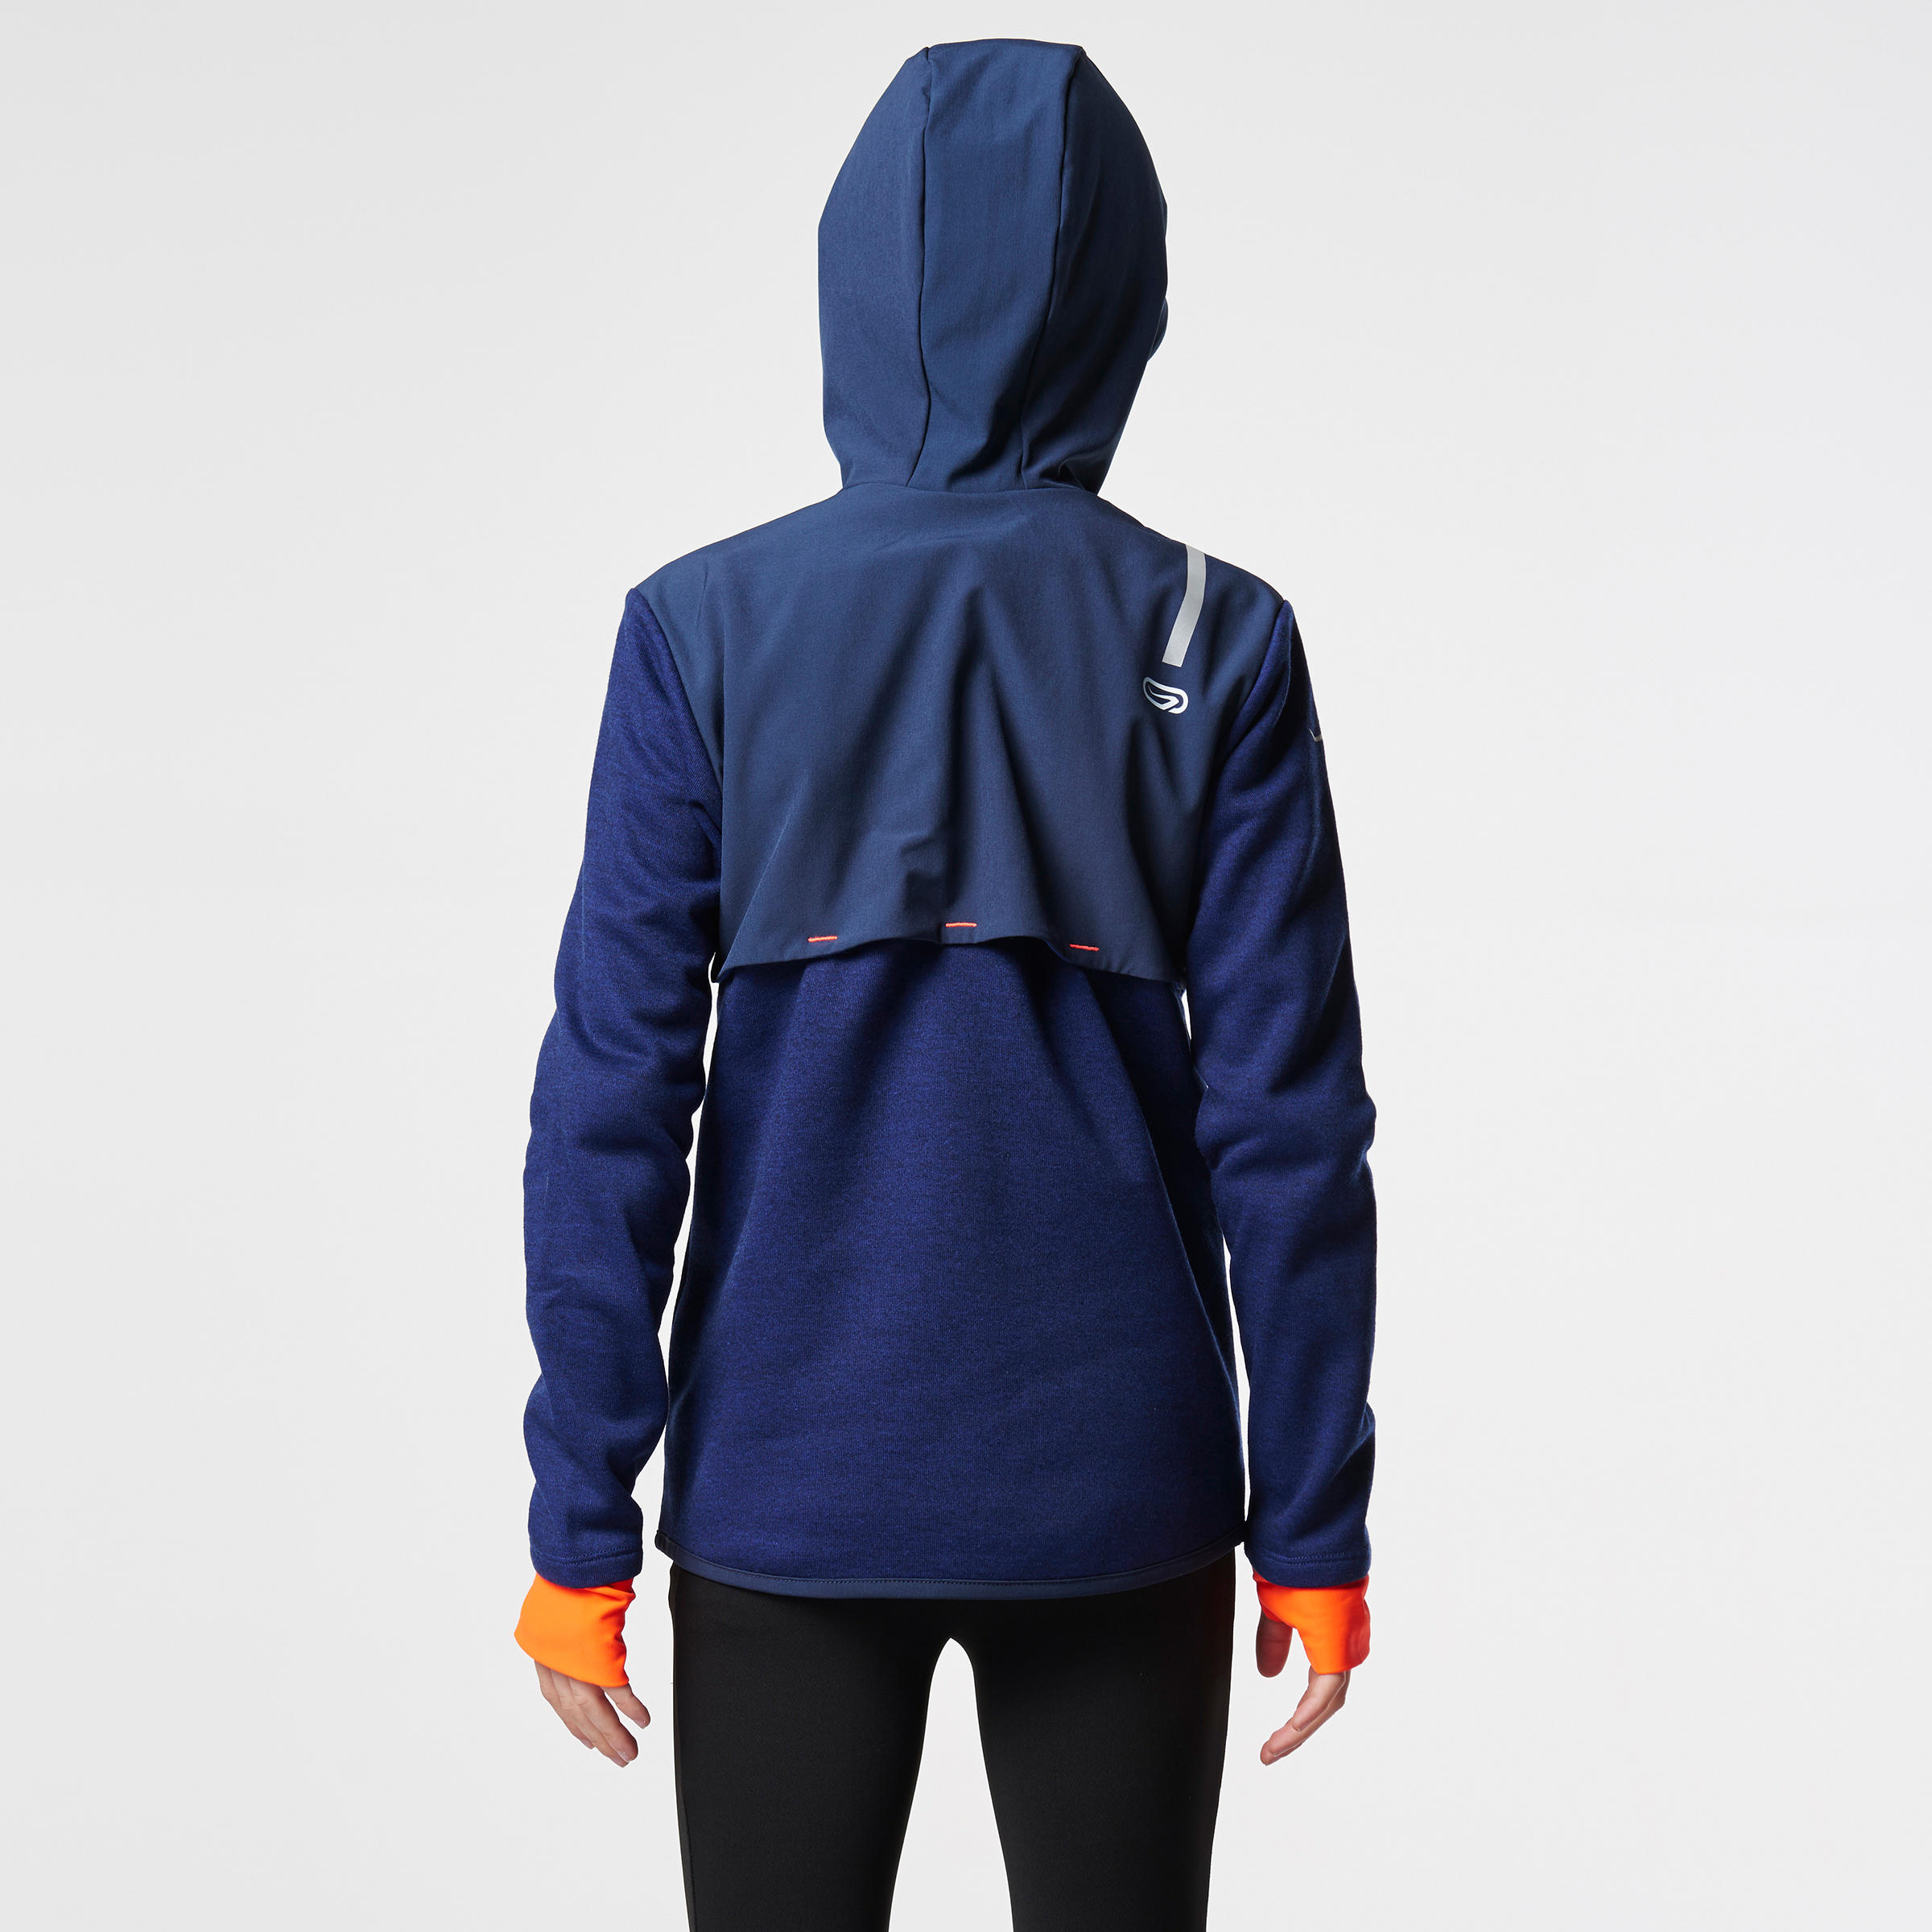 Elio Children's Running Hooded Jersey - Blue/Orange
 6/15